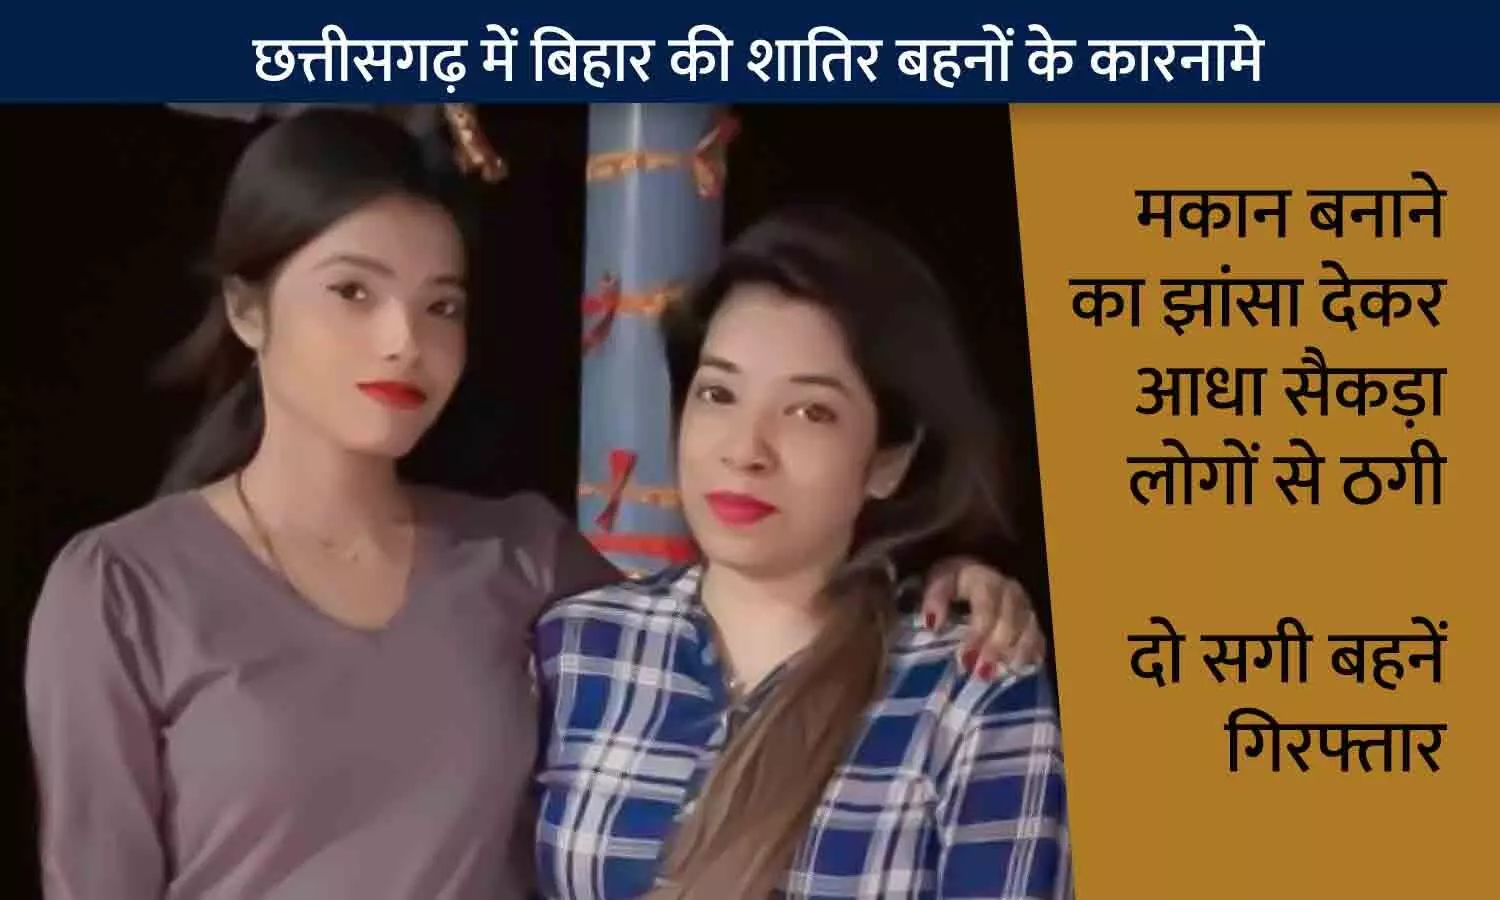 रायपुर में बिहार की दो सगी बहनें गिरफ्तार: सस्ते मकान का झांसा देकर आधा सैकड़ा से अधिक लोगों को बनाया ठगी का शिकार, ऐसे आई गिरफ्त में